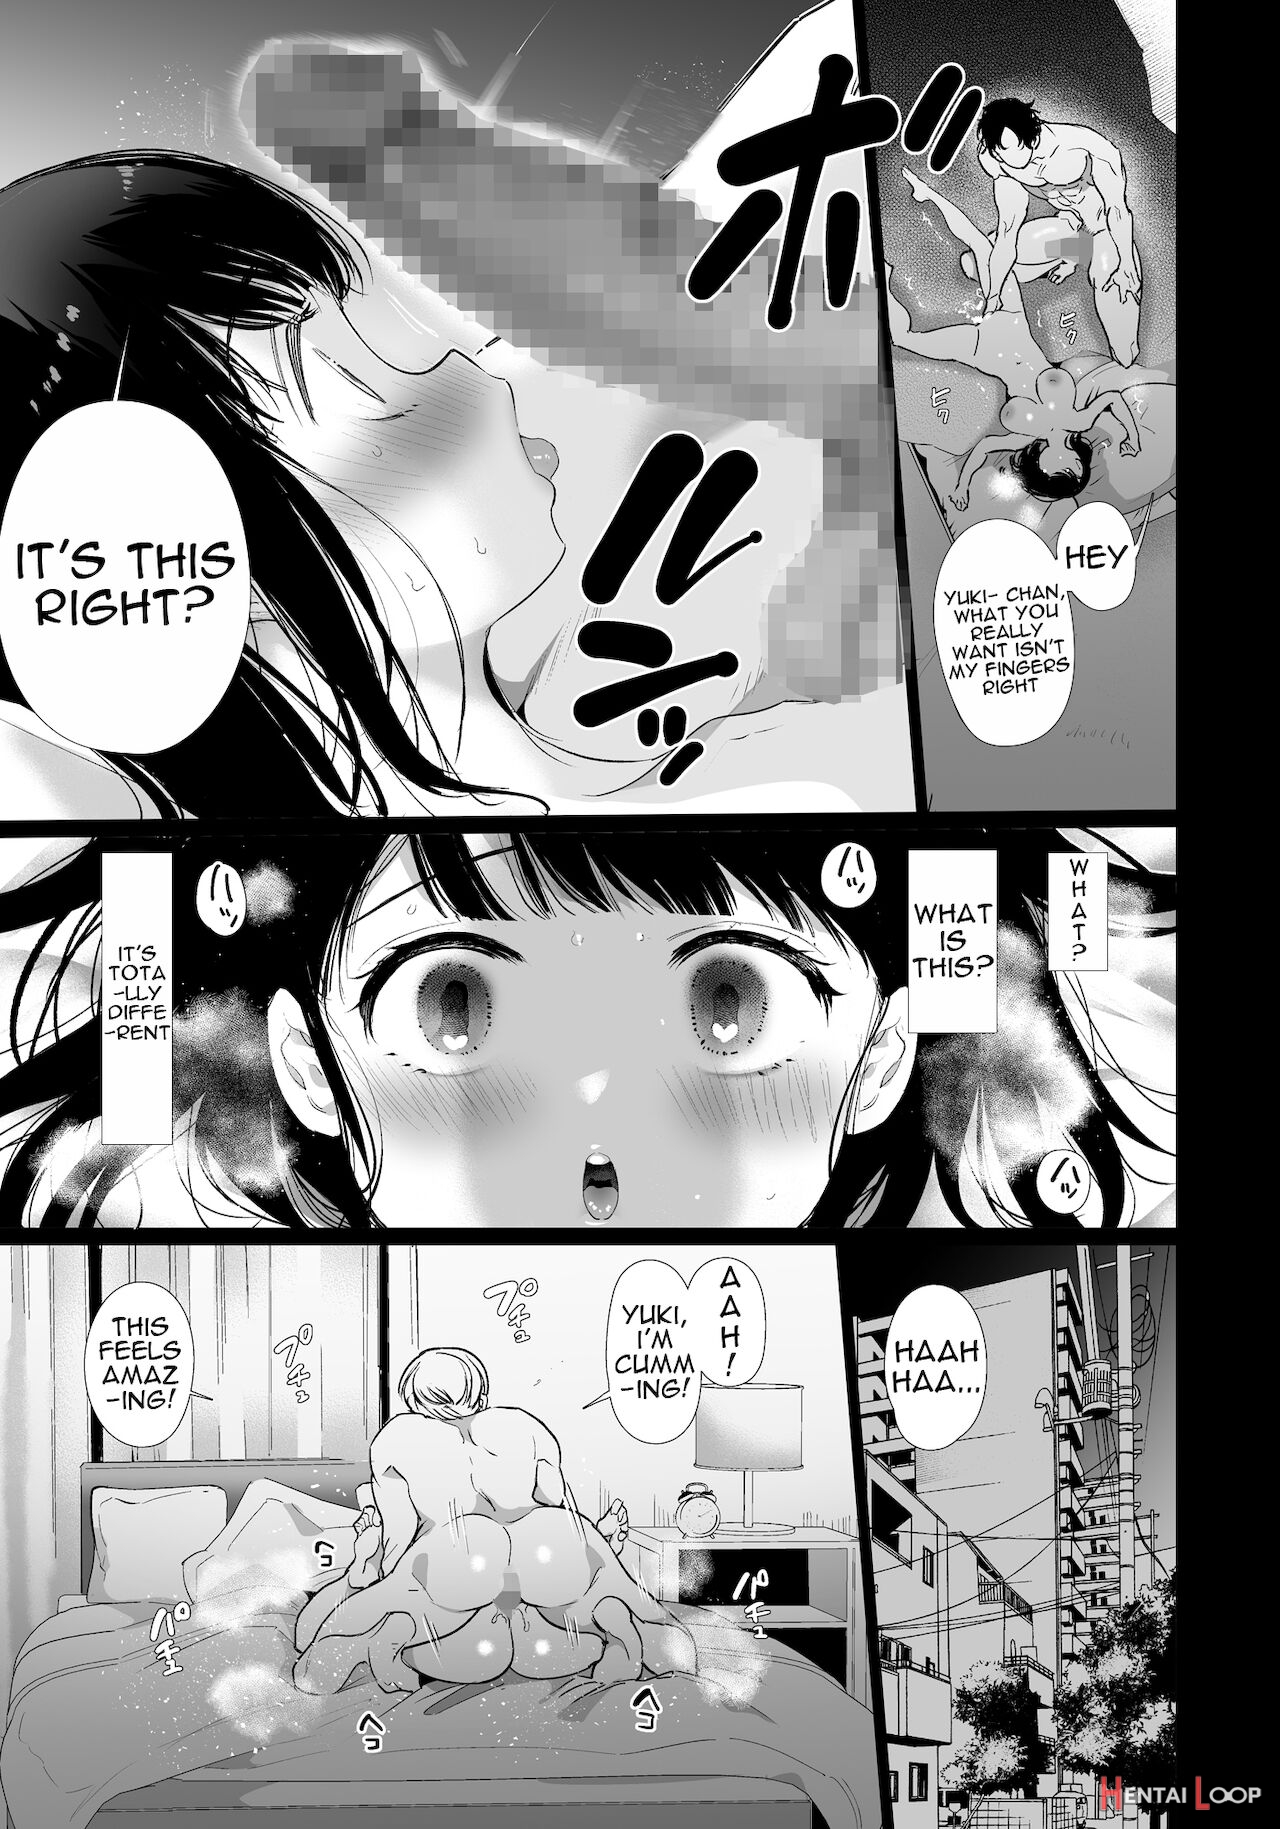 Yuki-chan Ntr page 16